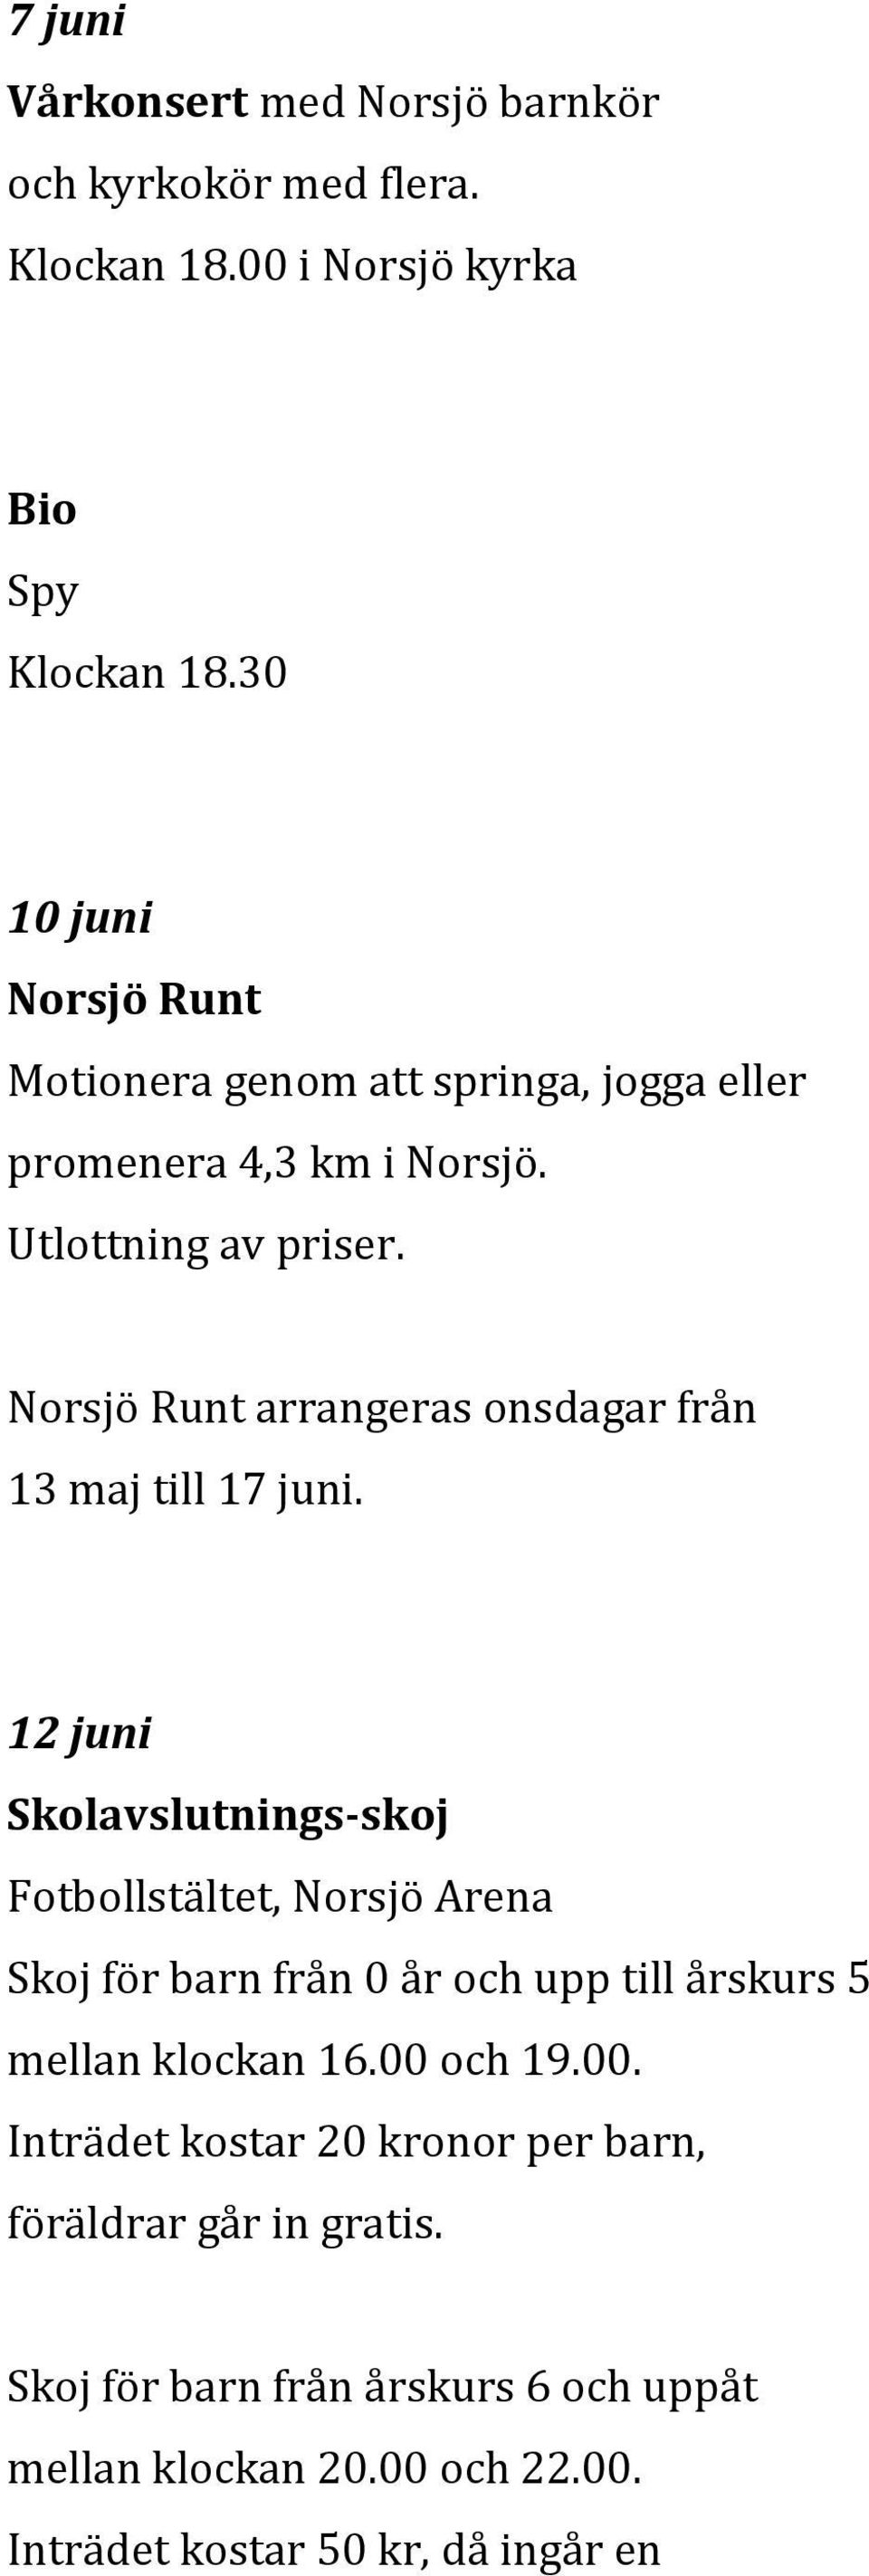 Norsjö Runt arrangeras onsdagar från 13 maj till 17 juni.